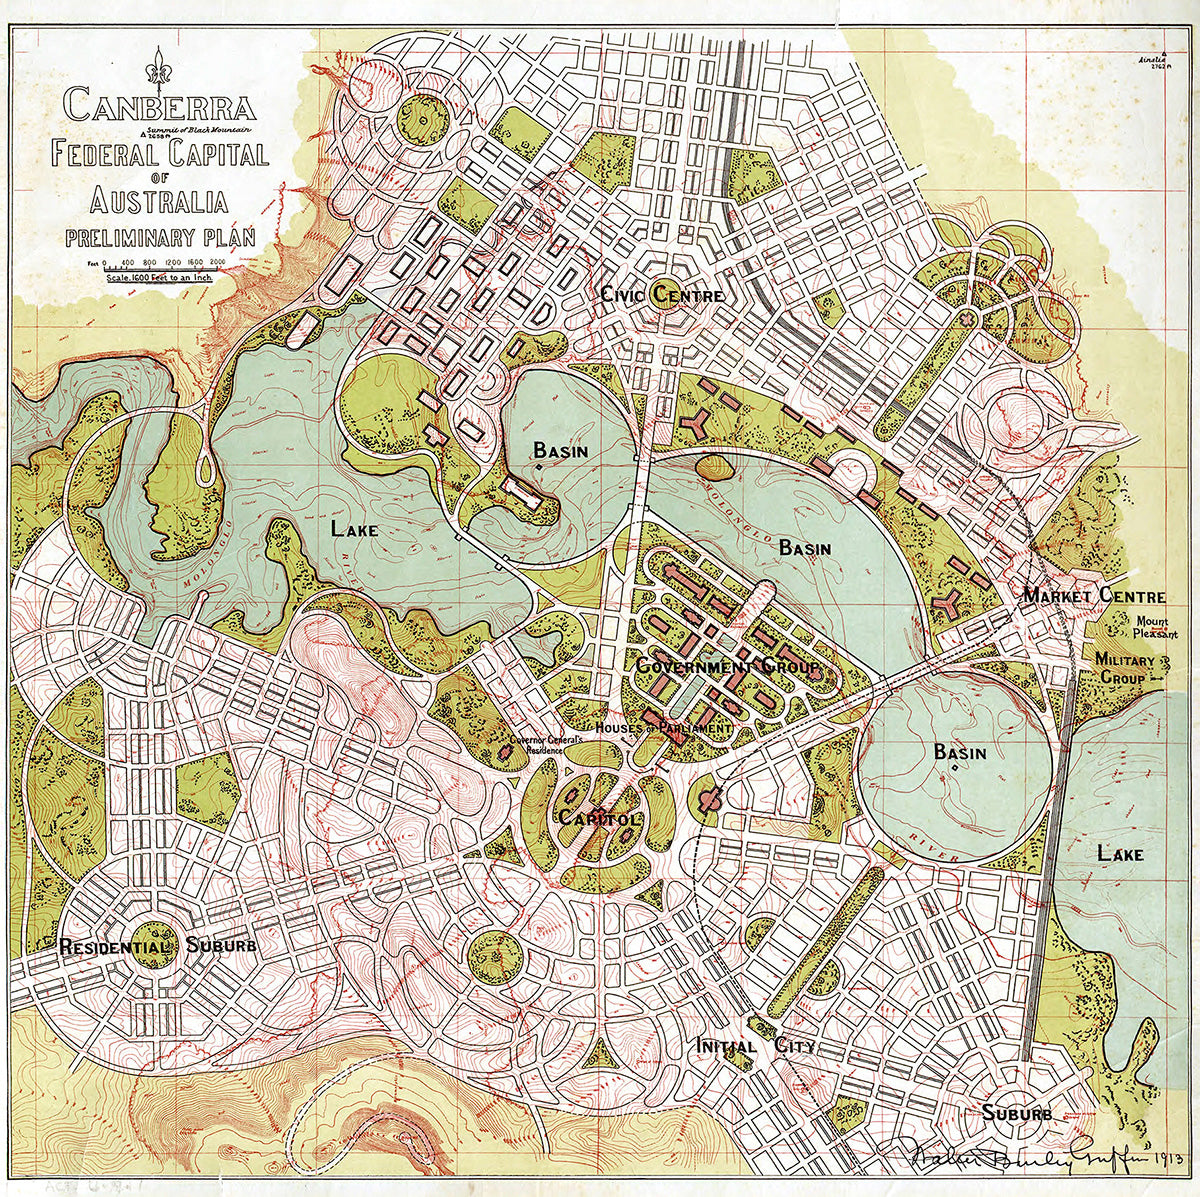 Canberra preliminary plan, circa 1914